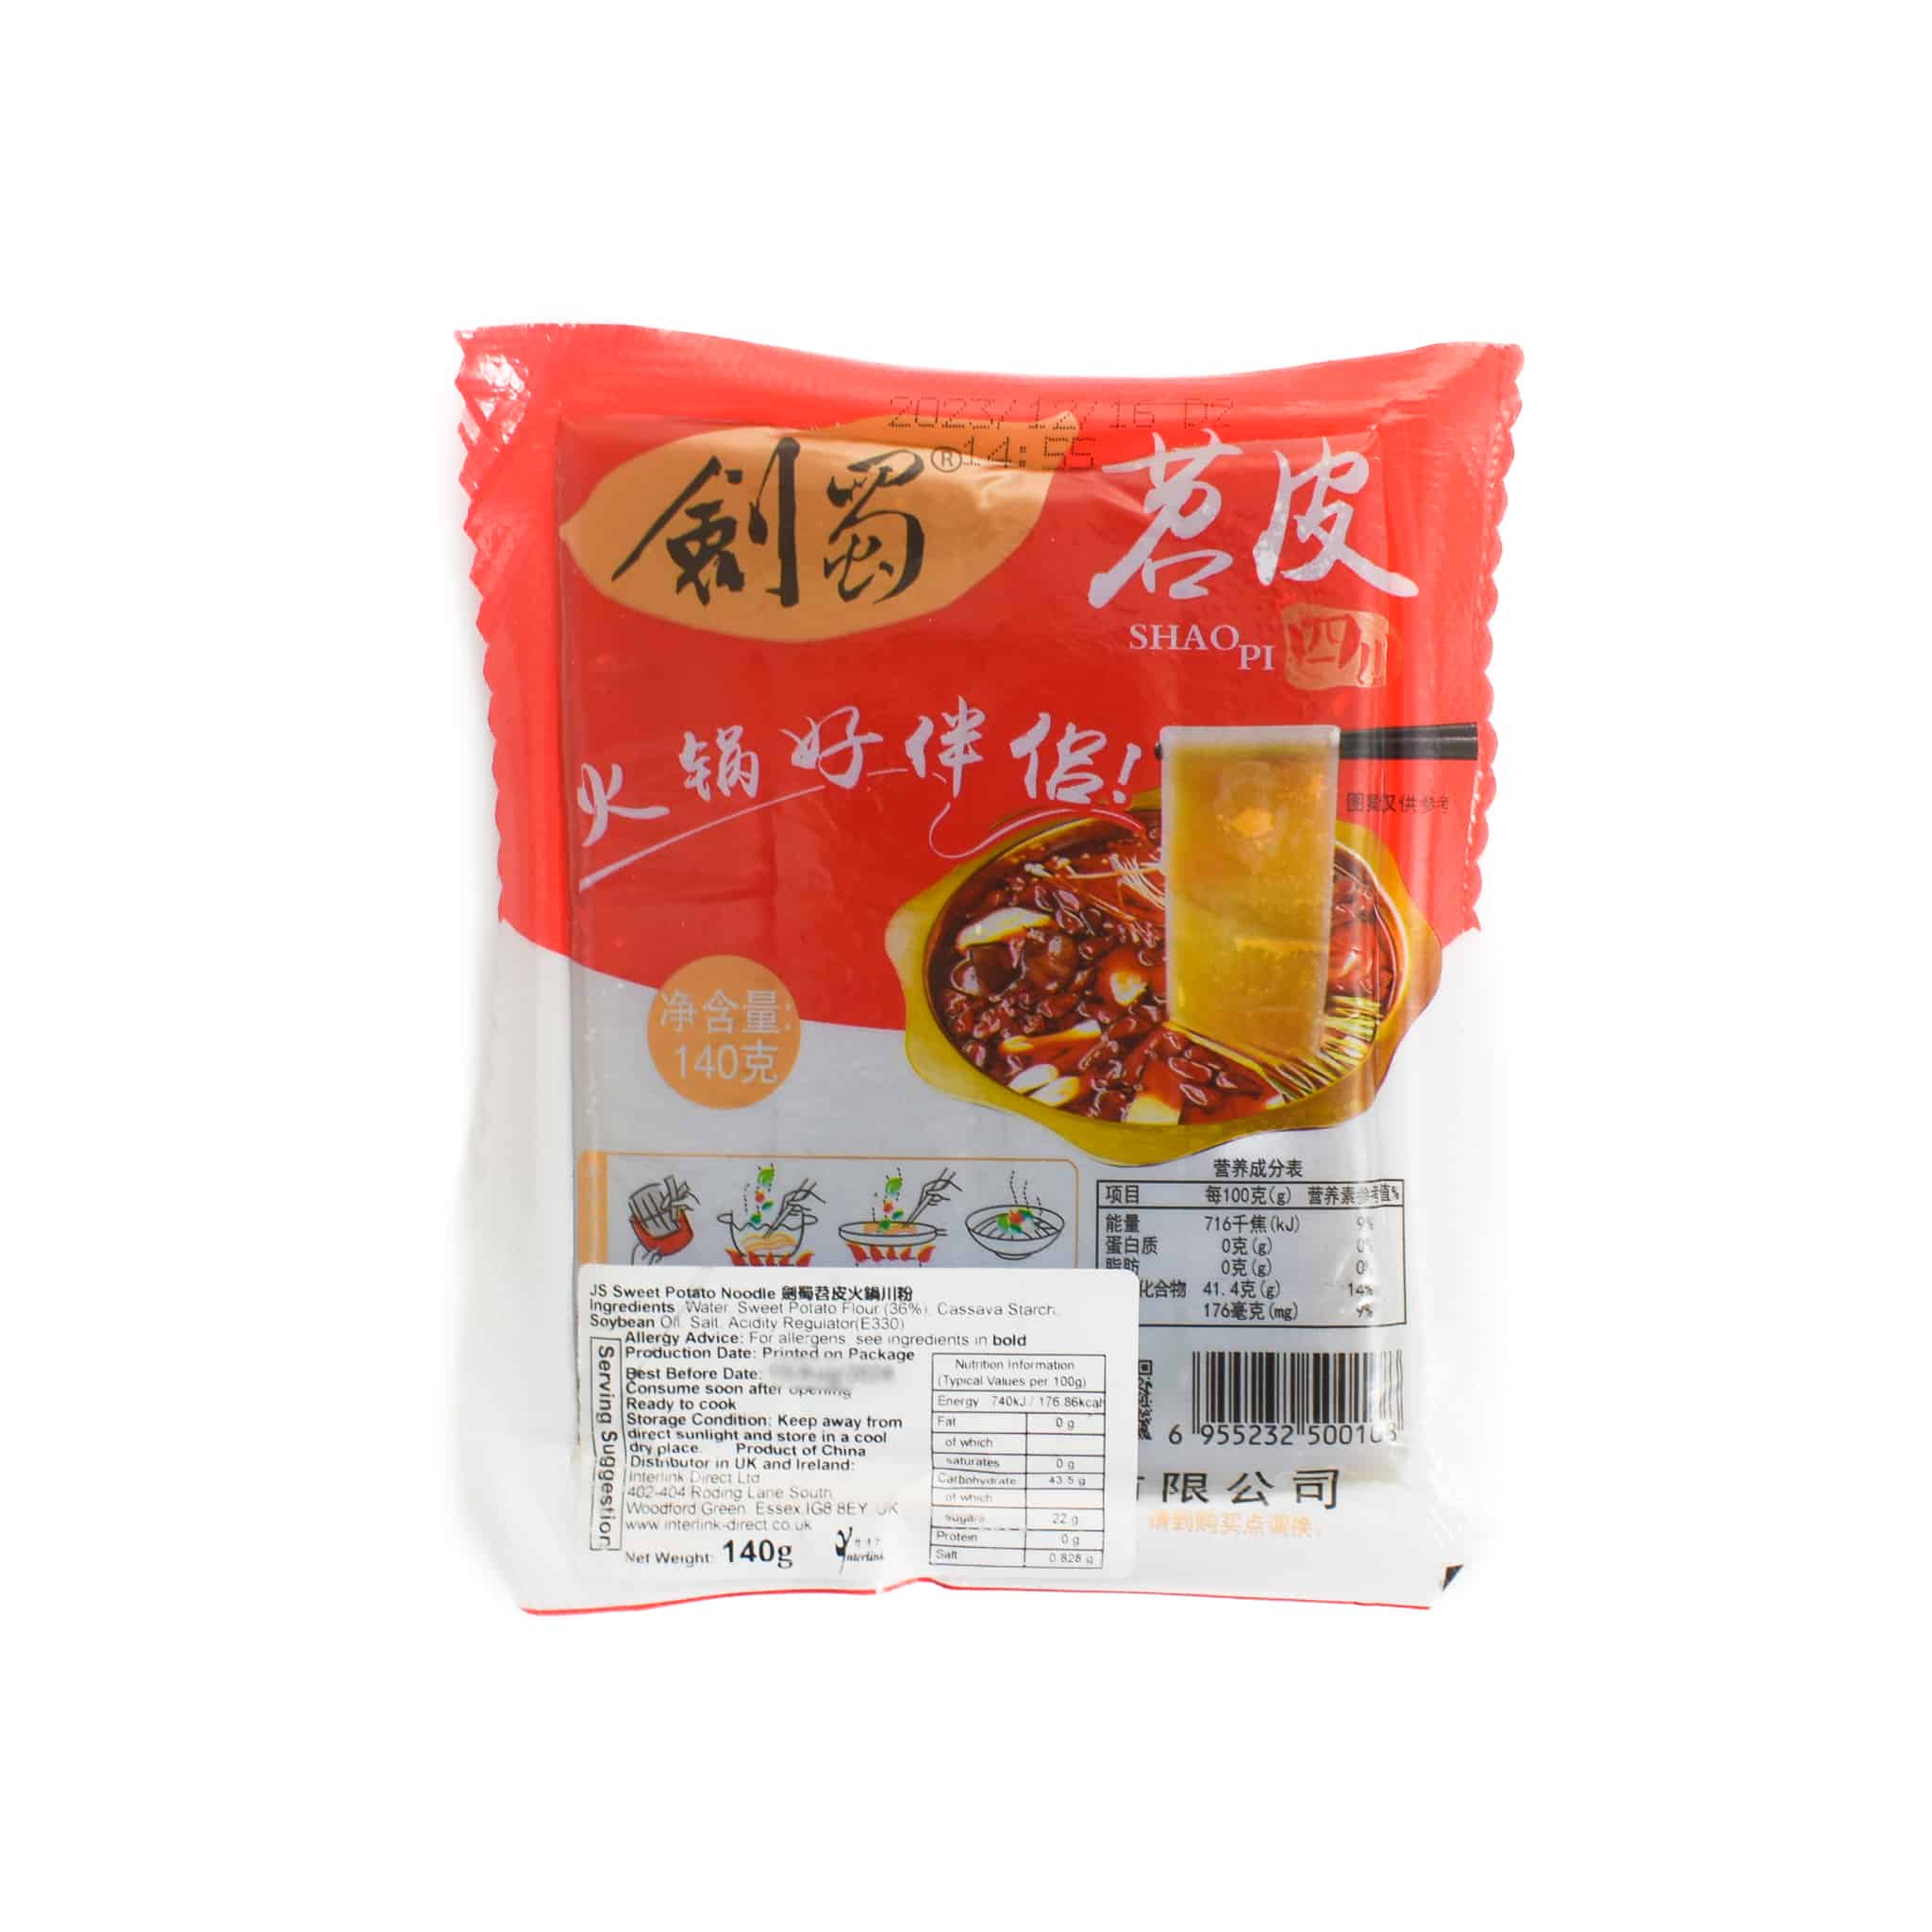 Sichuan Sweet Potato Noodle, 140g